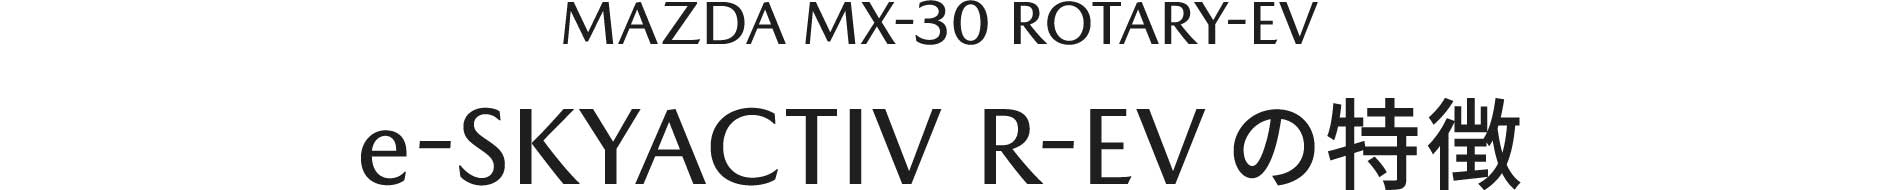 MAZDA MX-30 e-SKYACTIV R-EVの特徴